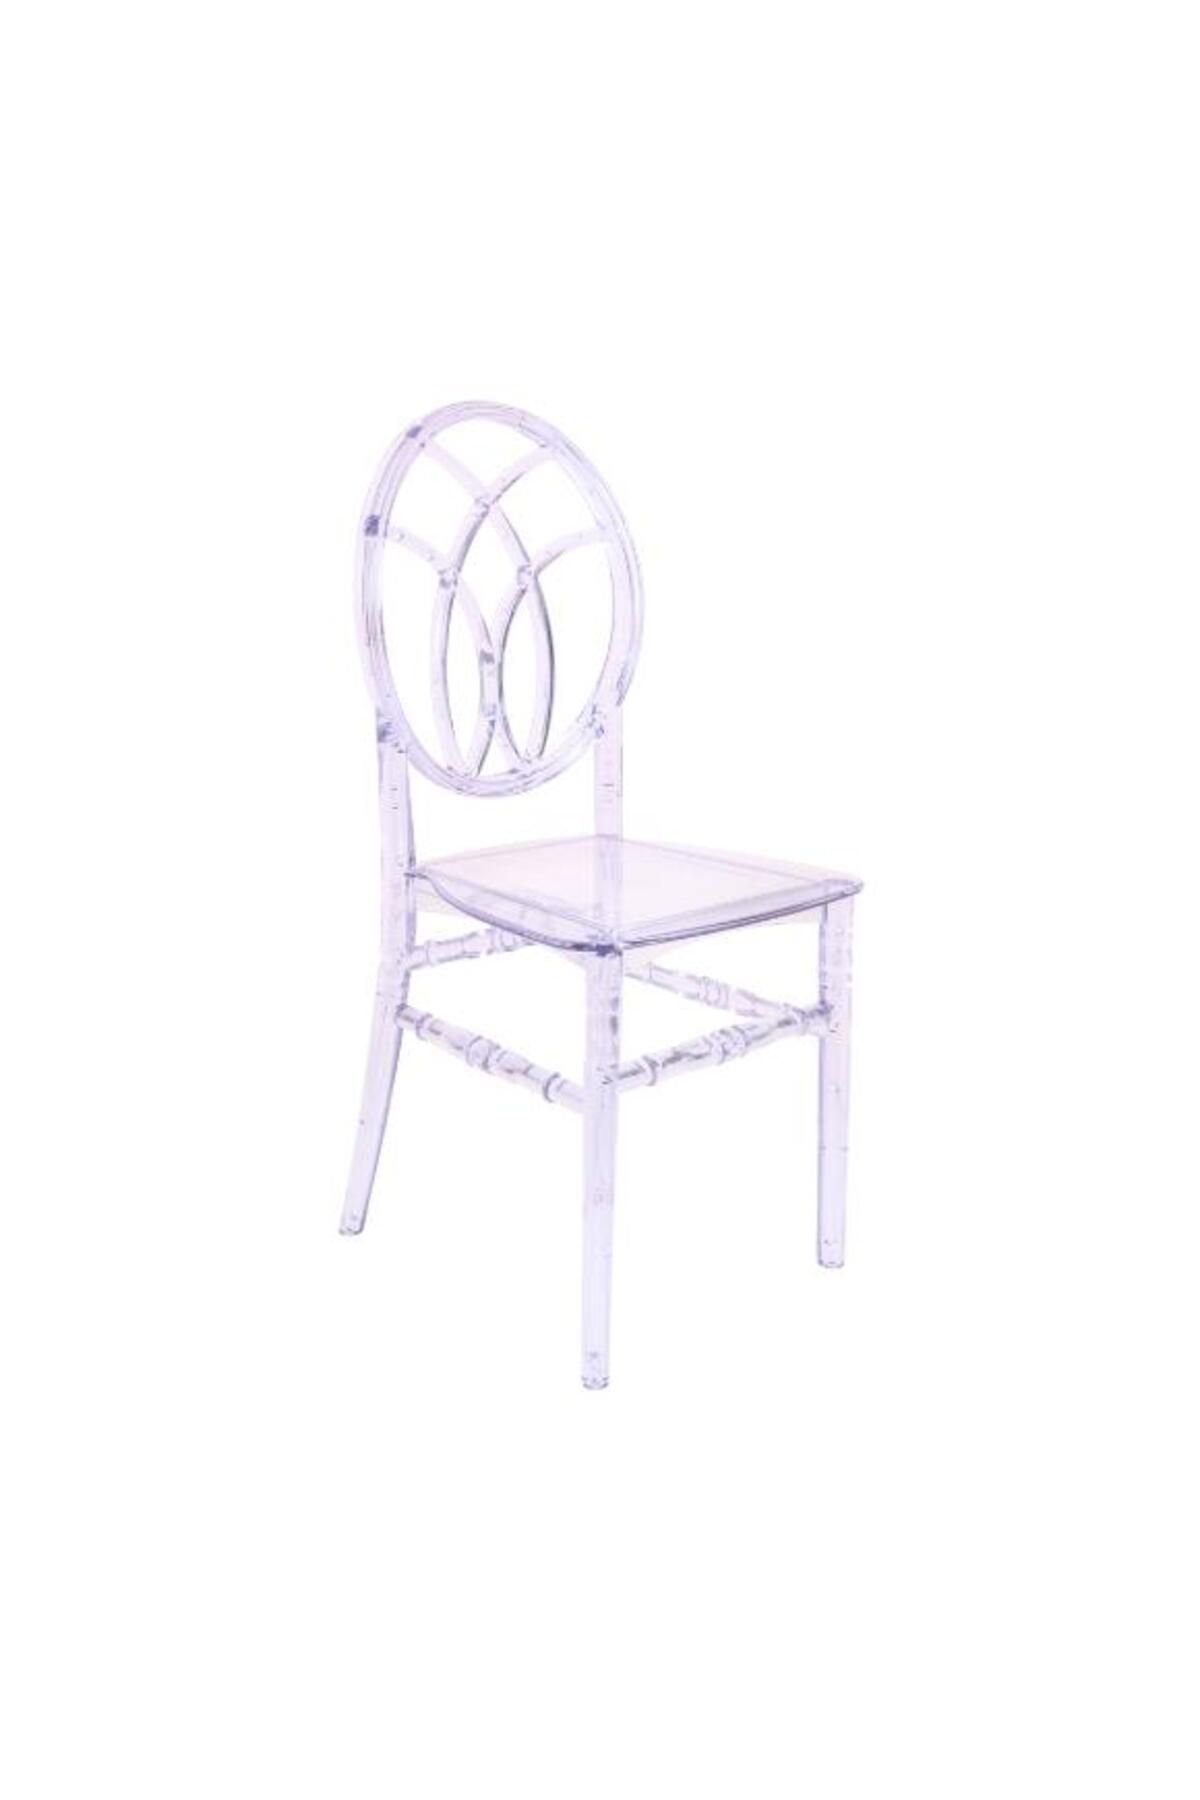 Mandella Karmen Şeffaf Kırılmaya Dayanıklı Sandalye Model 11 (2 Adet)